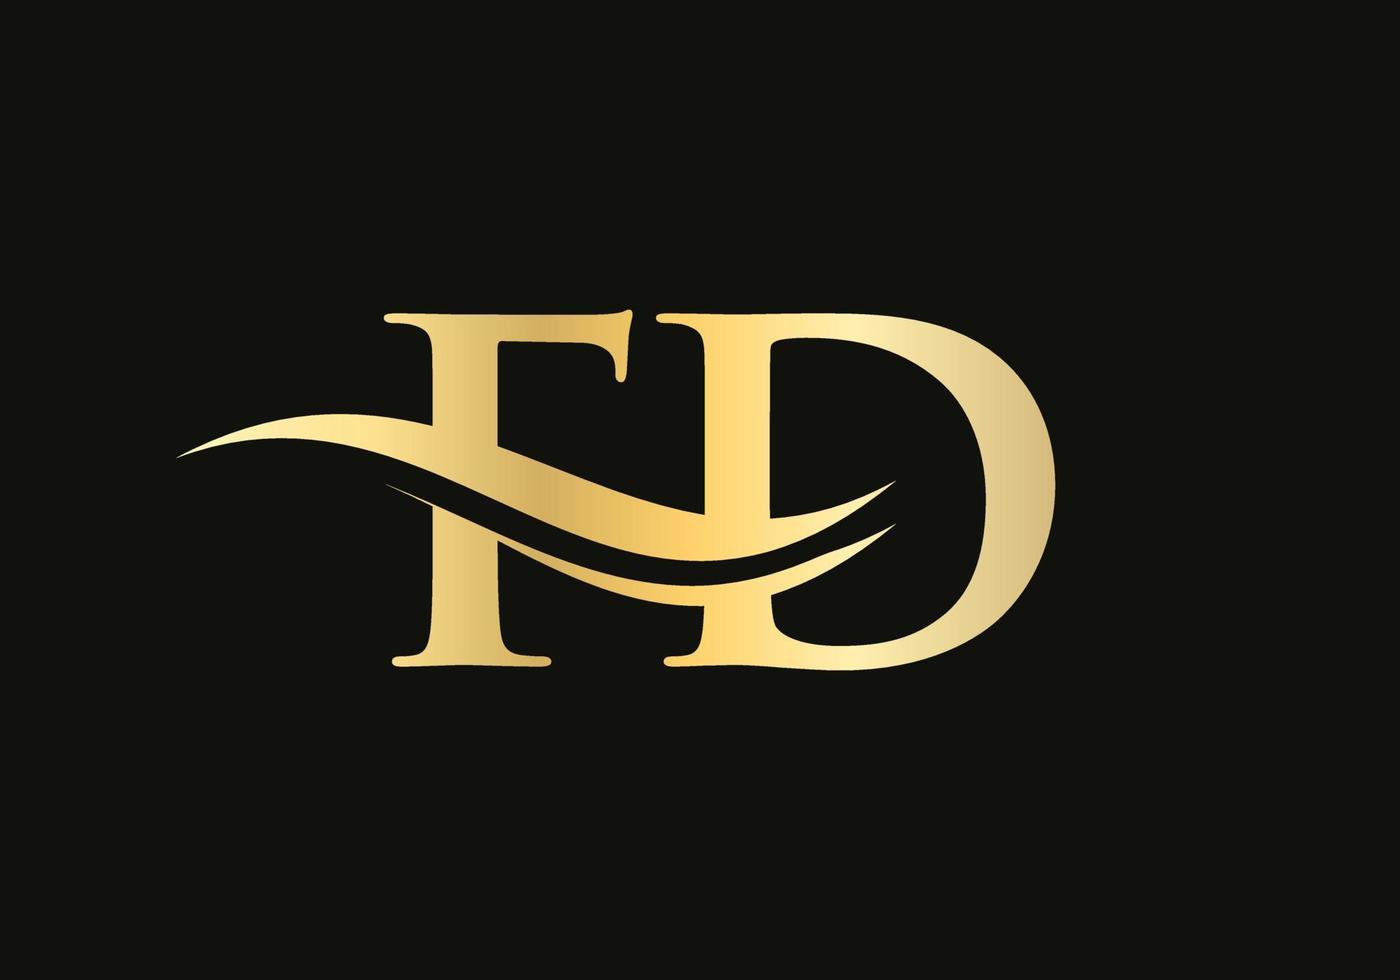 design de logotipo de carta ouro fd. design de logotipo fd com moda criativa e moderna vetor